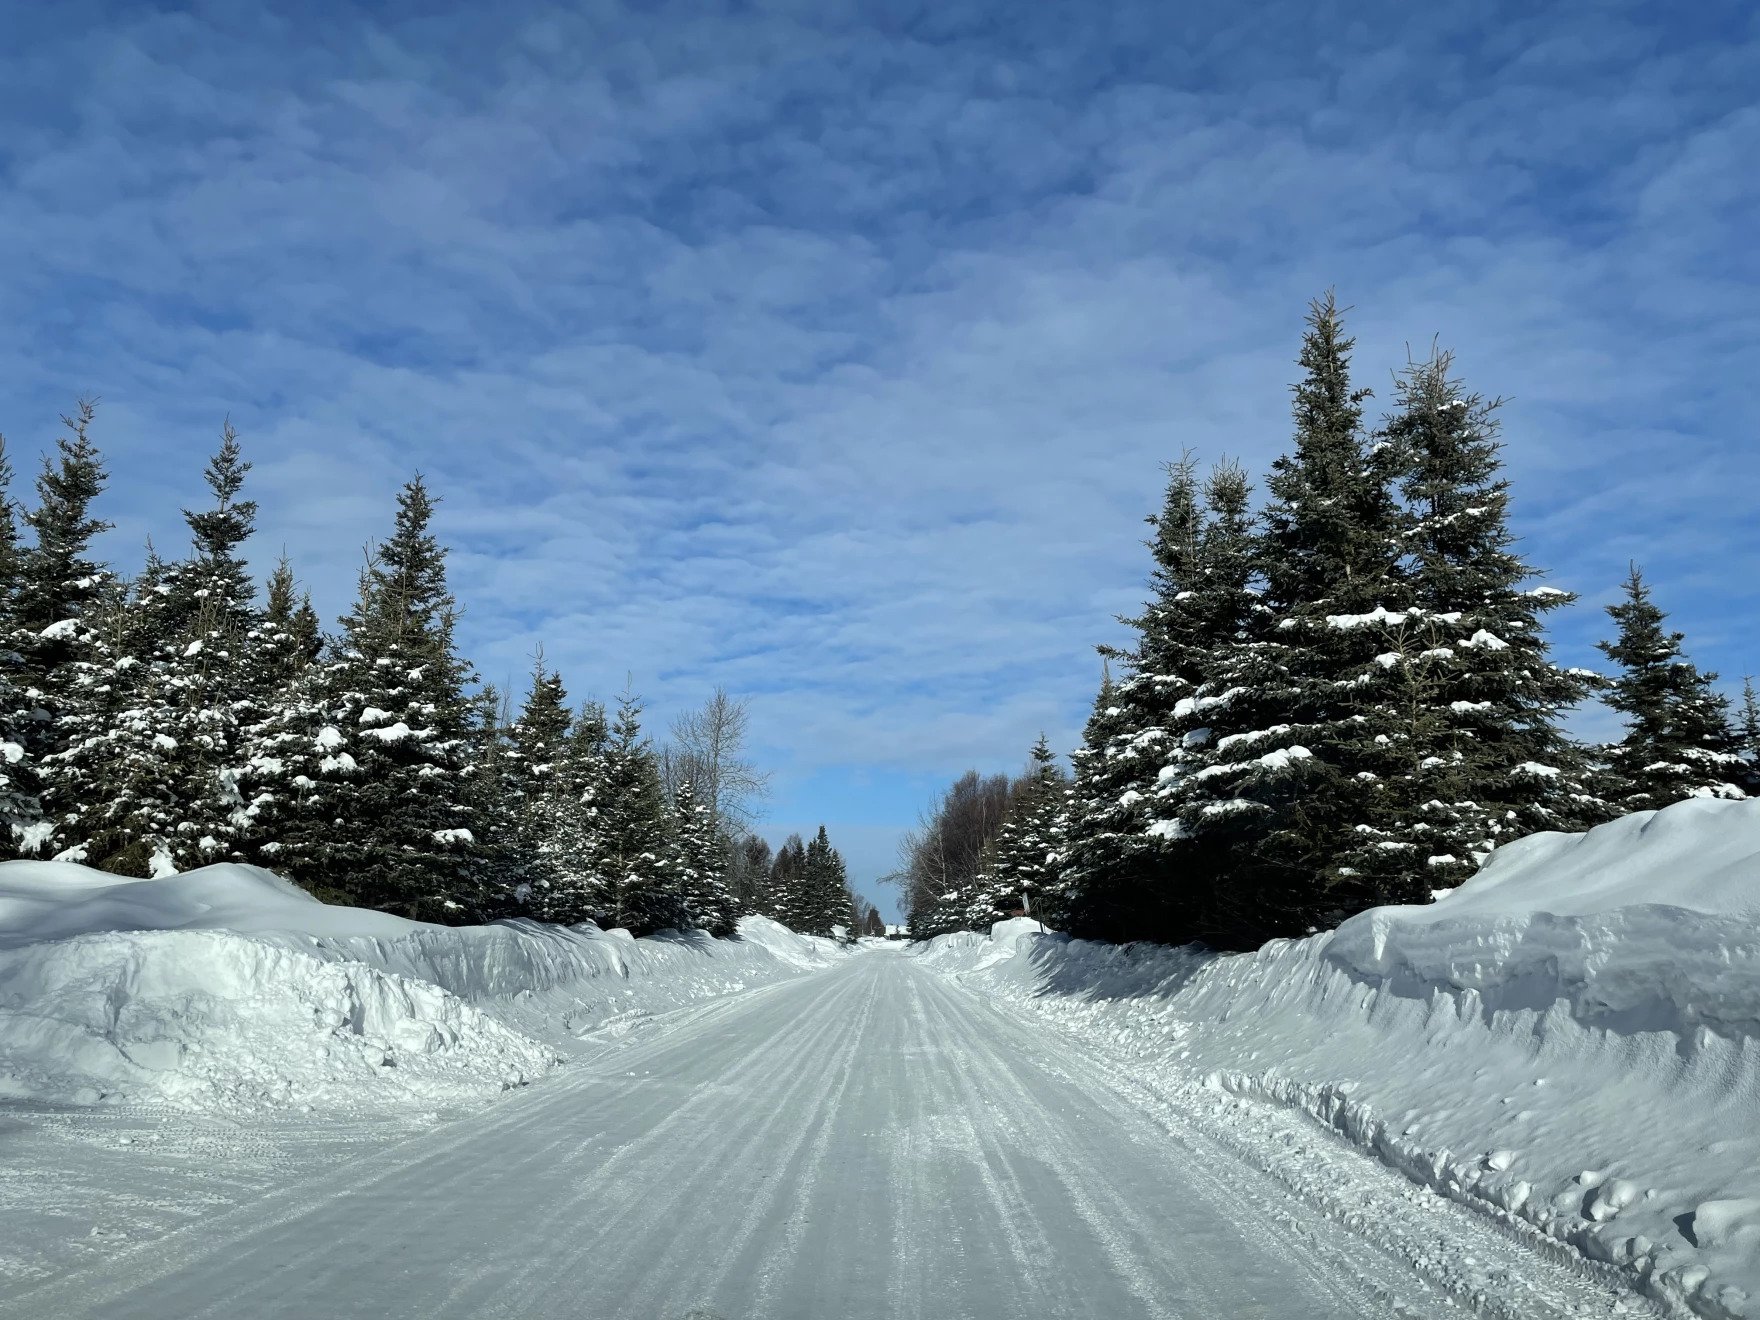 a snowy road